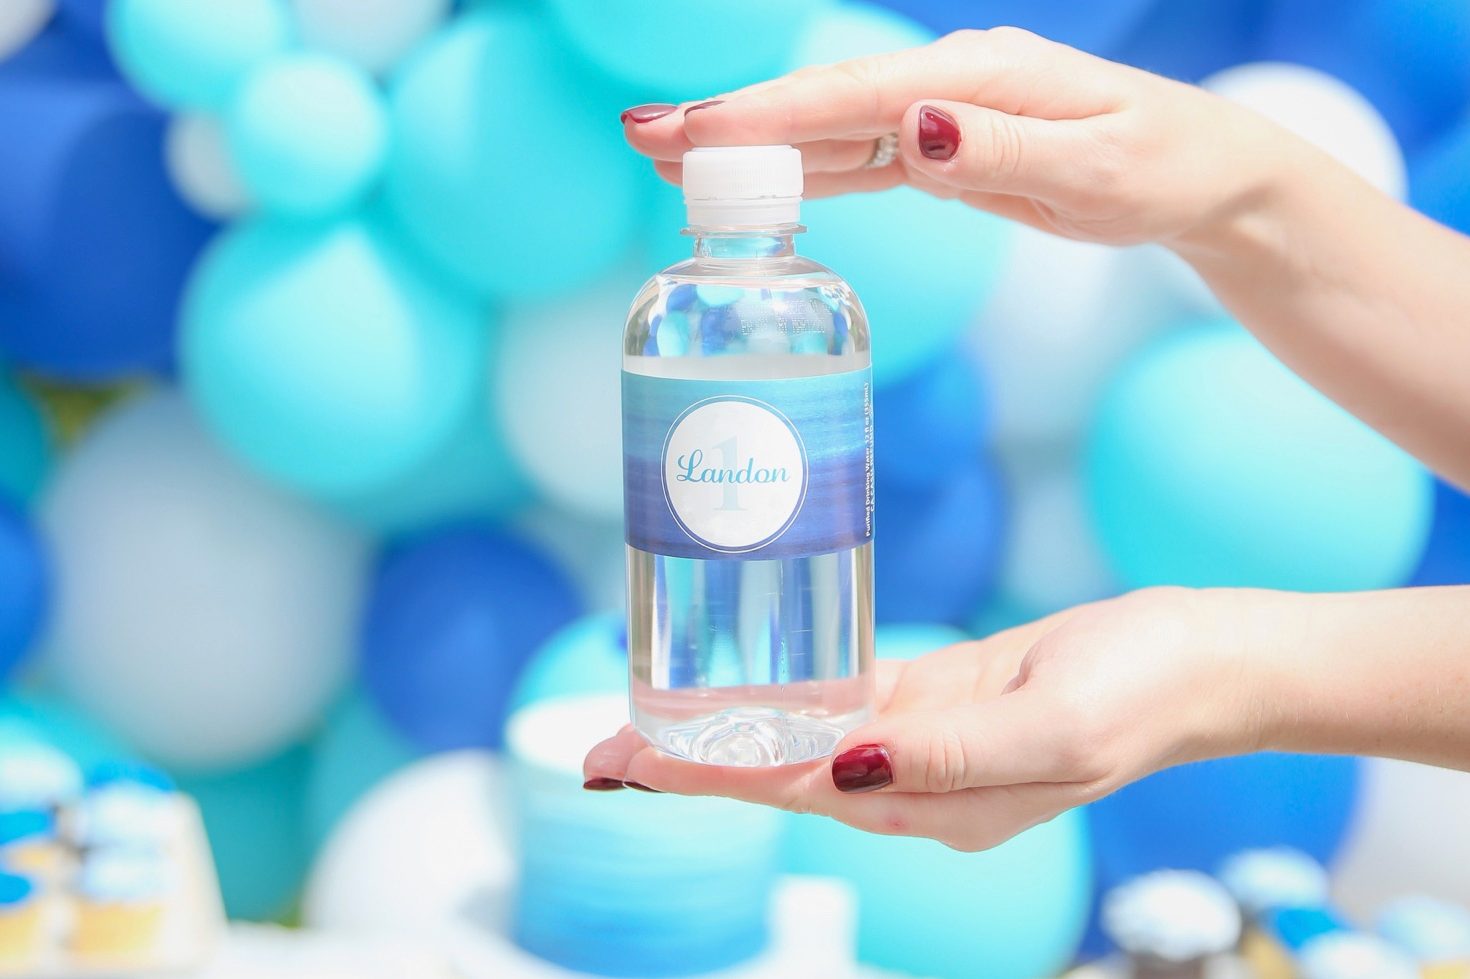 Full Color Clear Custom Bottled Water - 8 oz.